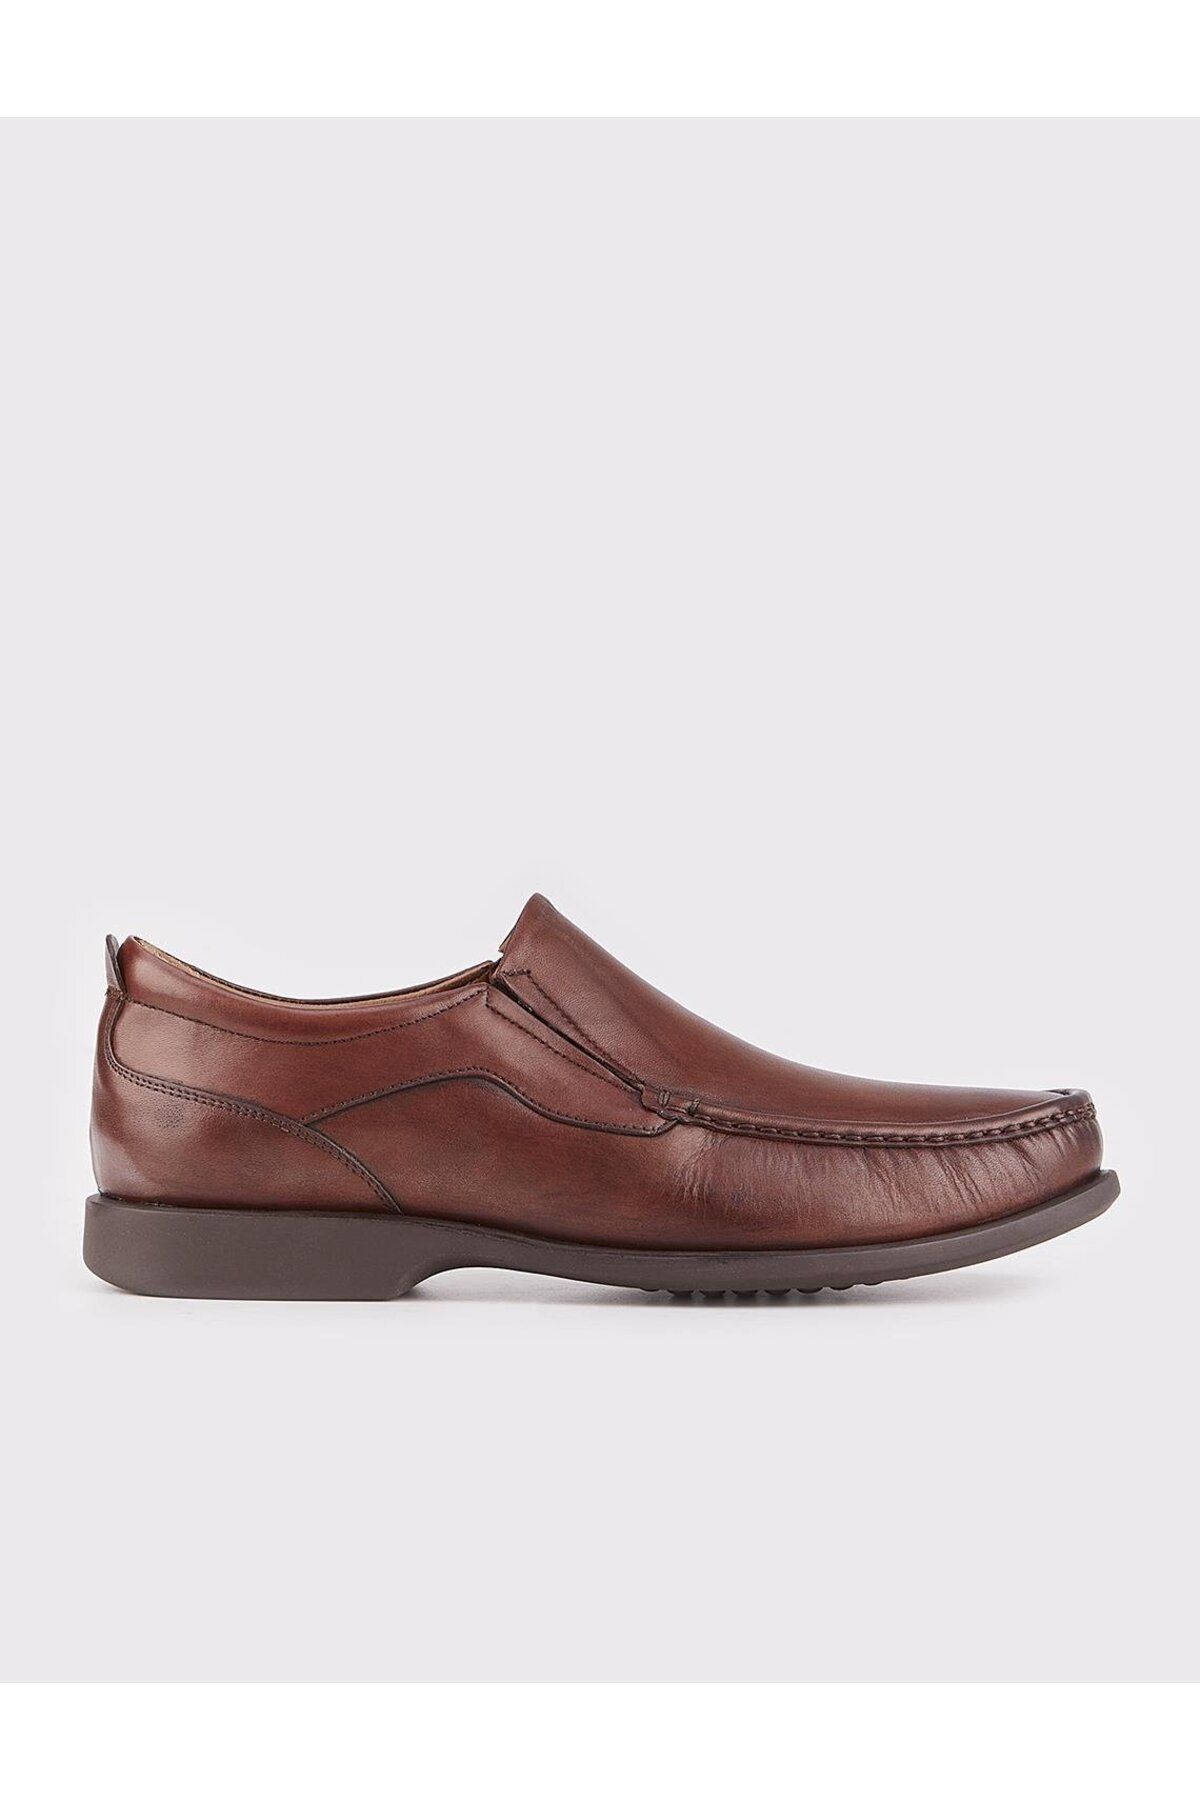 Cabani Hakiki Deri Kahverengi Erkek Günlük Ayakkabı